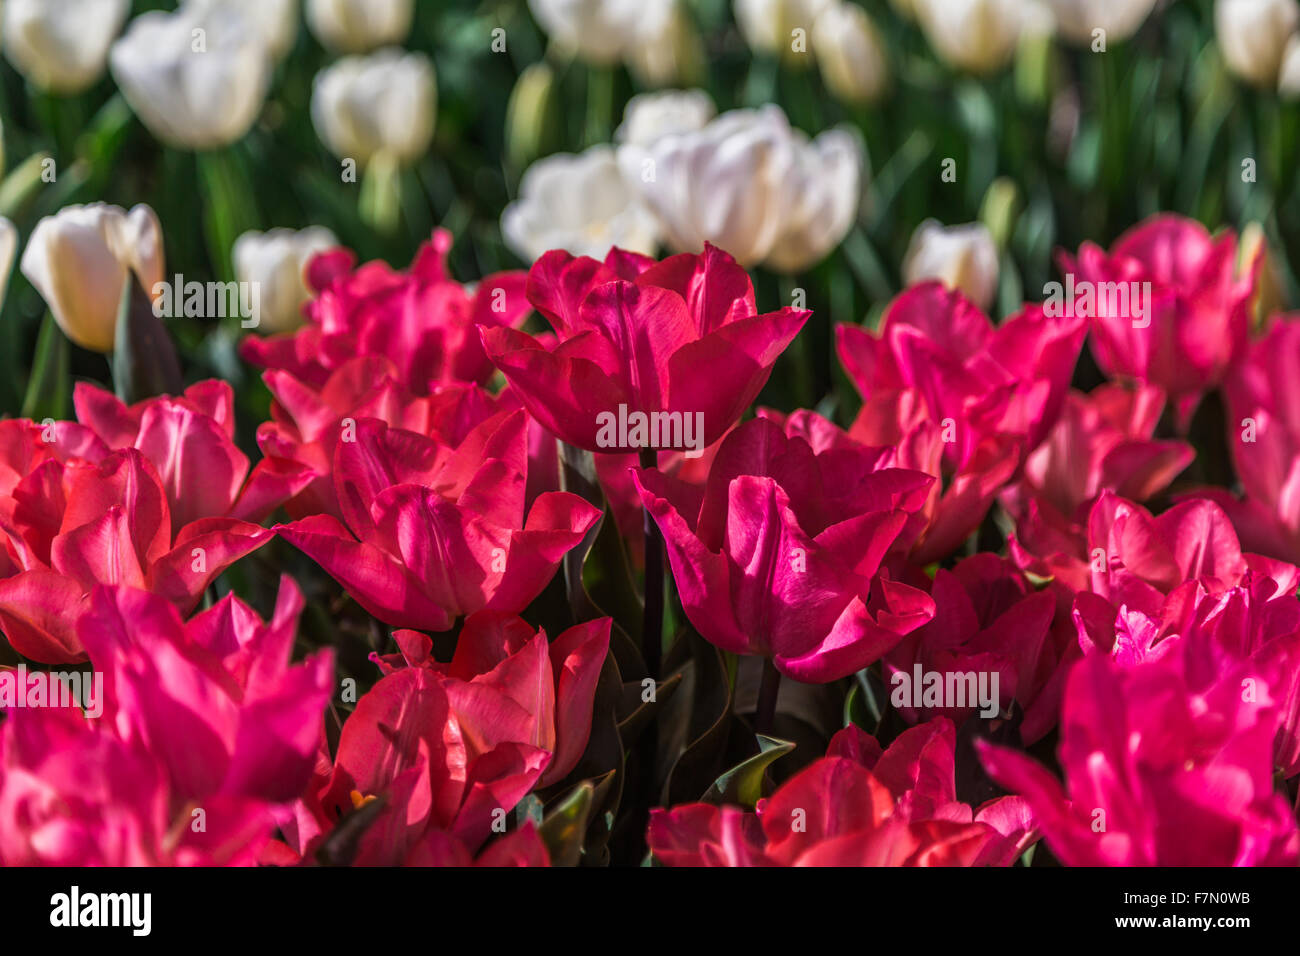 Rosa flores de tulipán (Tulipa Lilioideae) Foto de stock